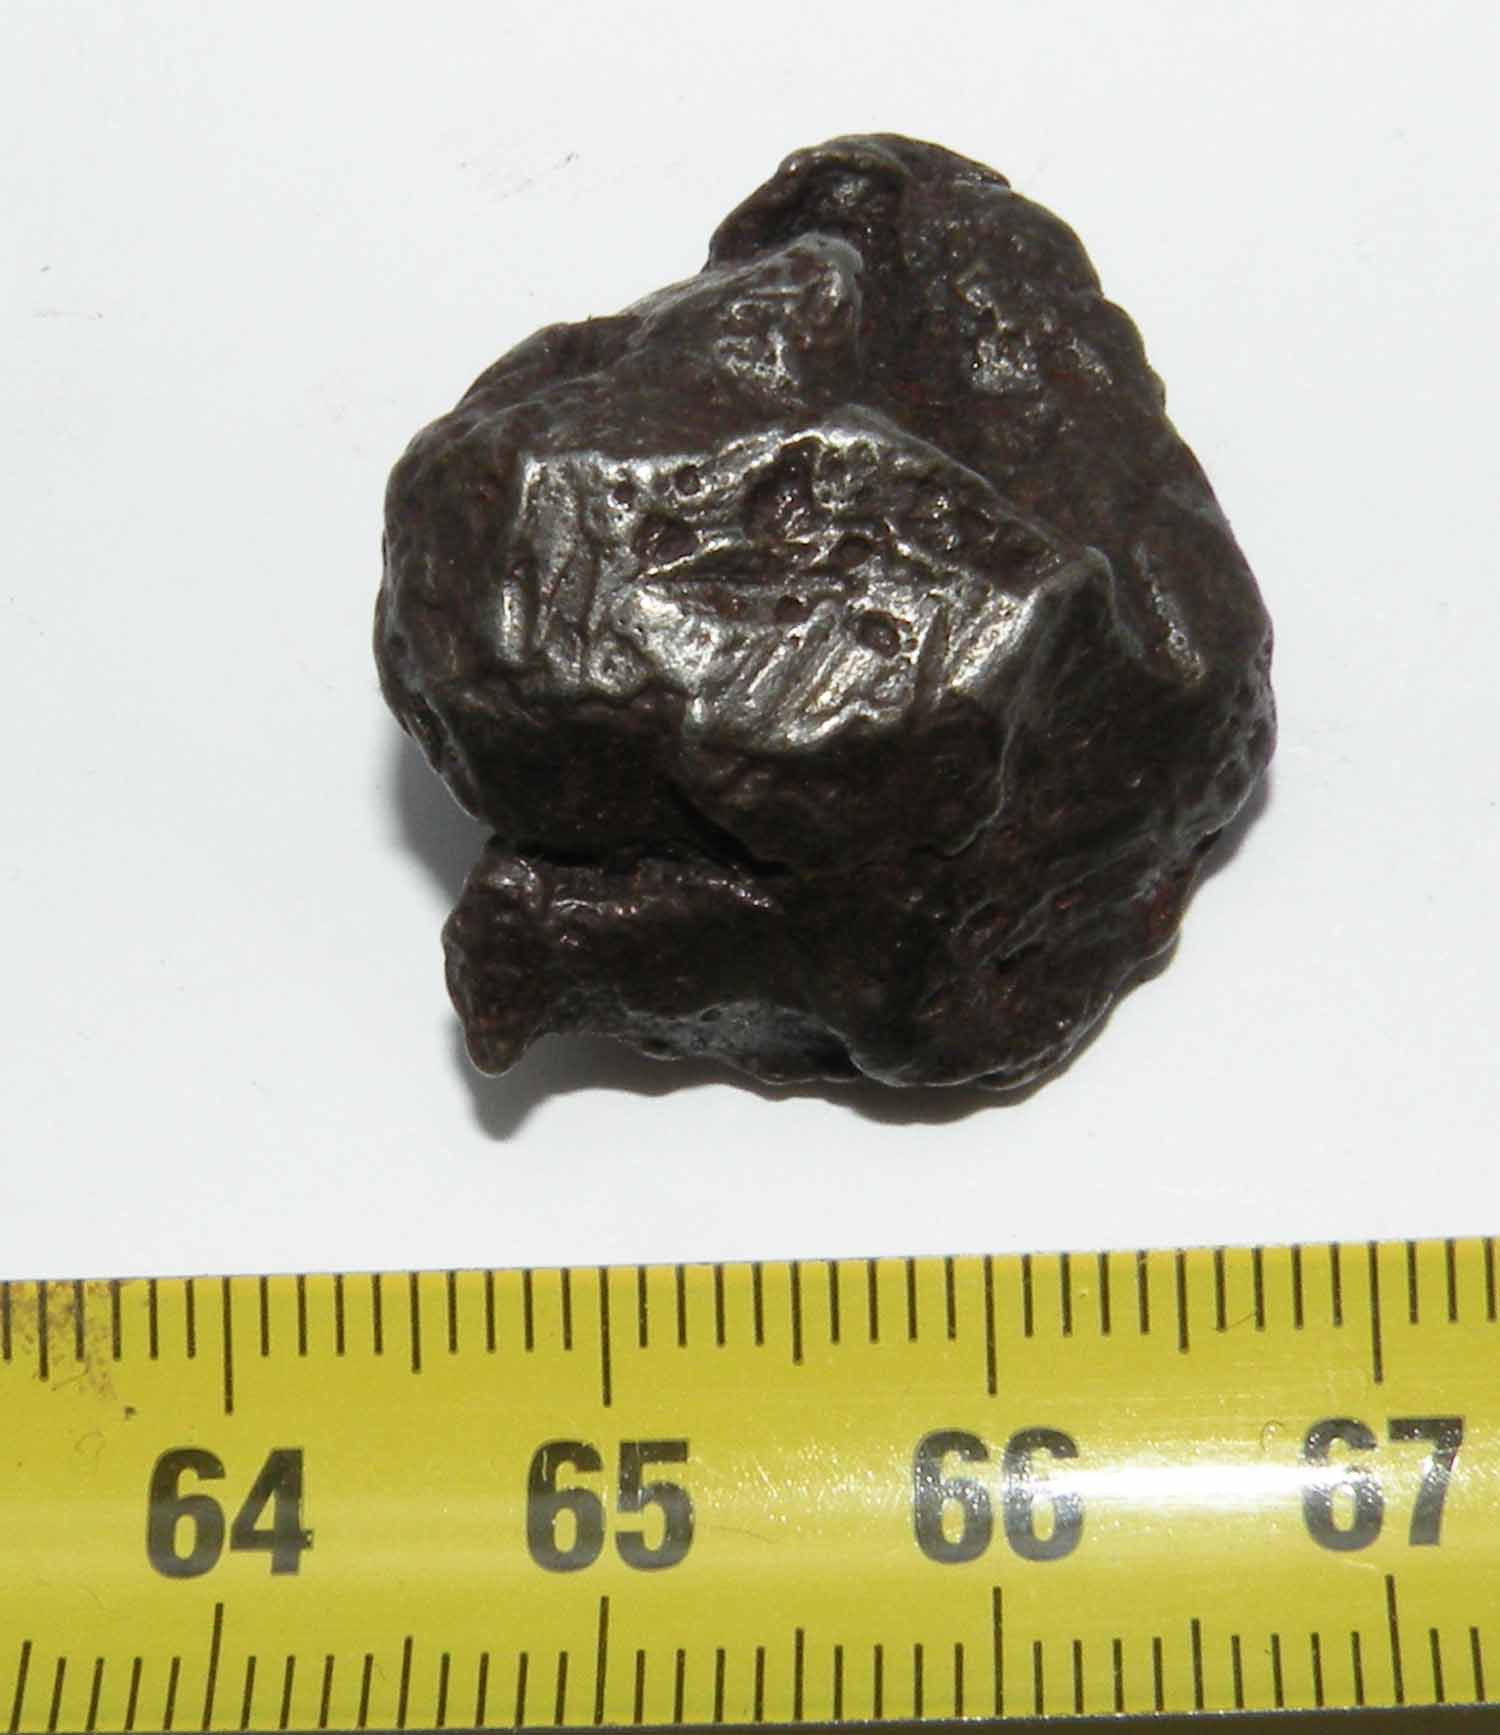 https://www.nuggetsfactory.com/EURO/meteorite/sikhote%20alin/83%20sikhote%20alin%20.jpg